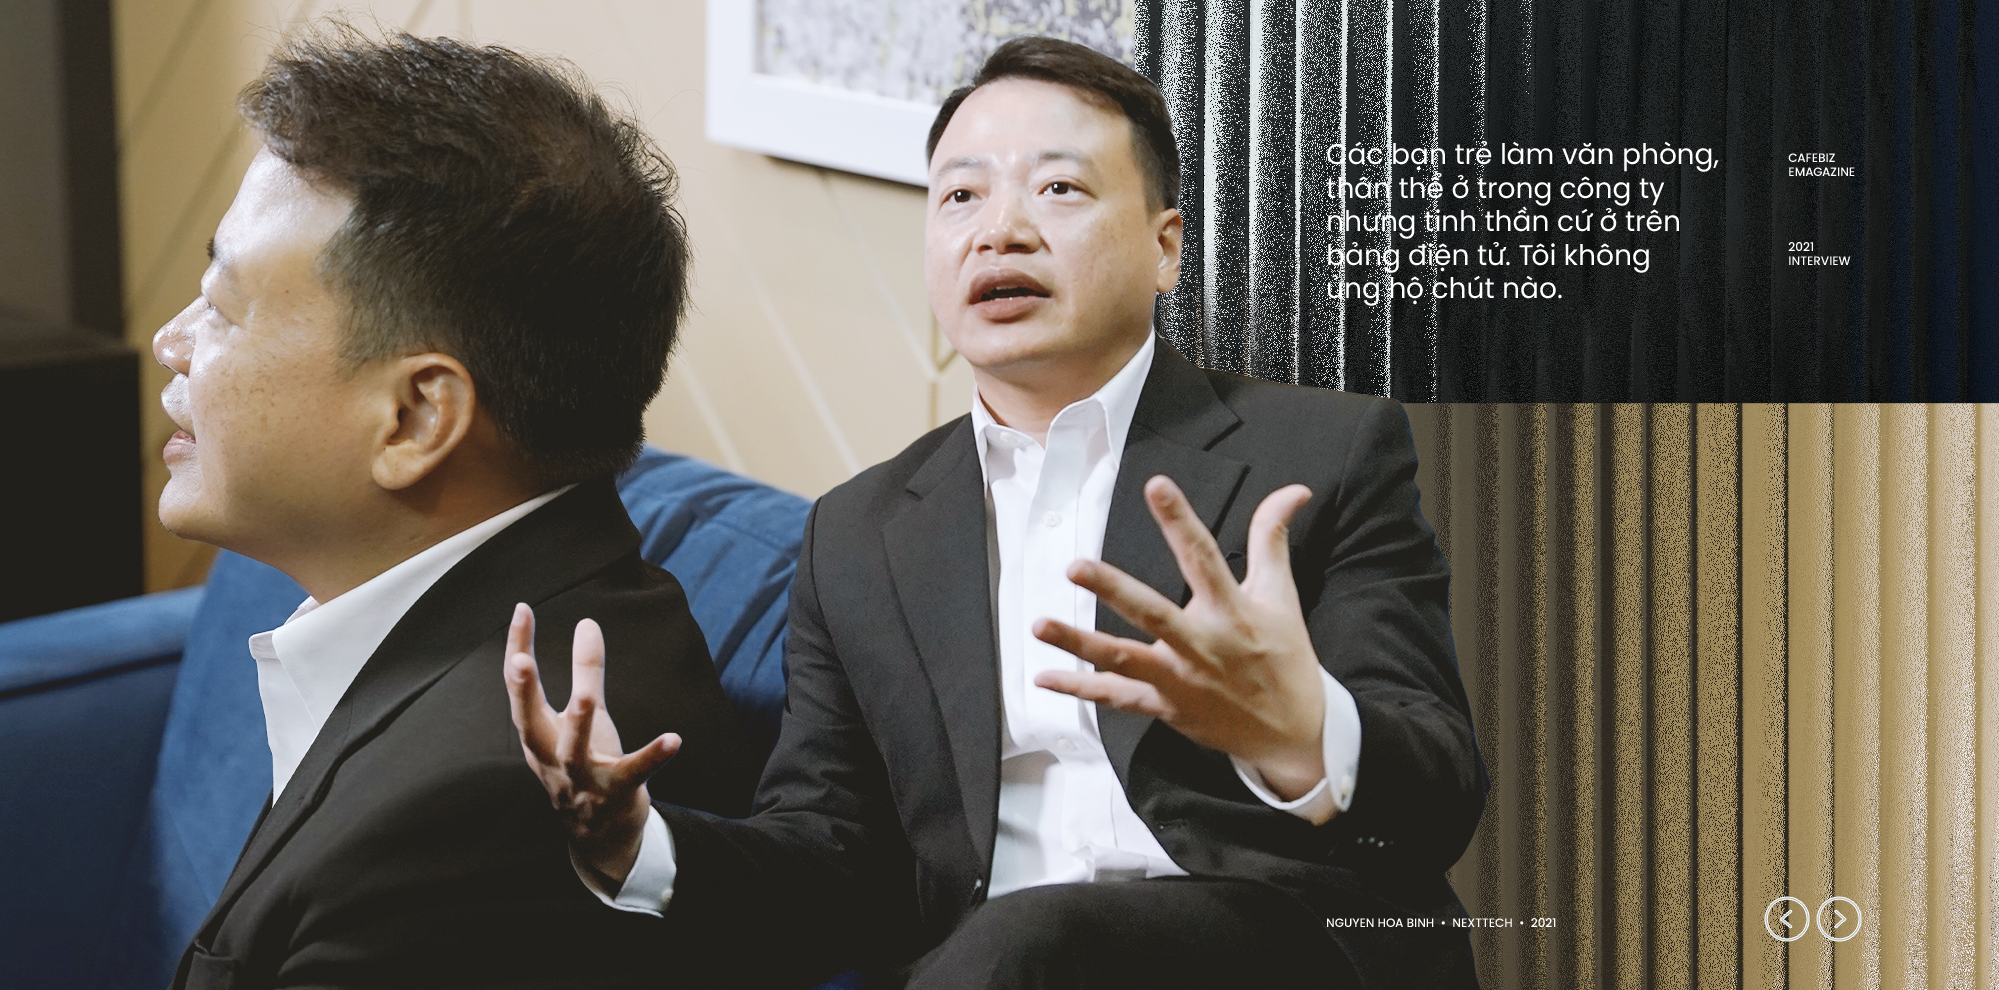 Chủ tịch NextTech – Nguyễn Hoà Bình nói về giấc mộng tỷ phú: “Giờ có 1 tỷ USD tôi cũng không biết làm gì” - Ảnh 11.